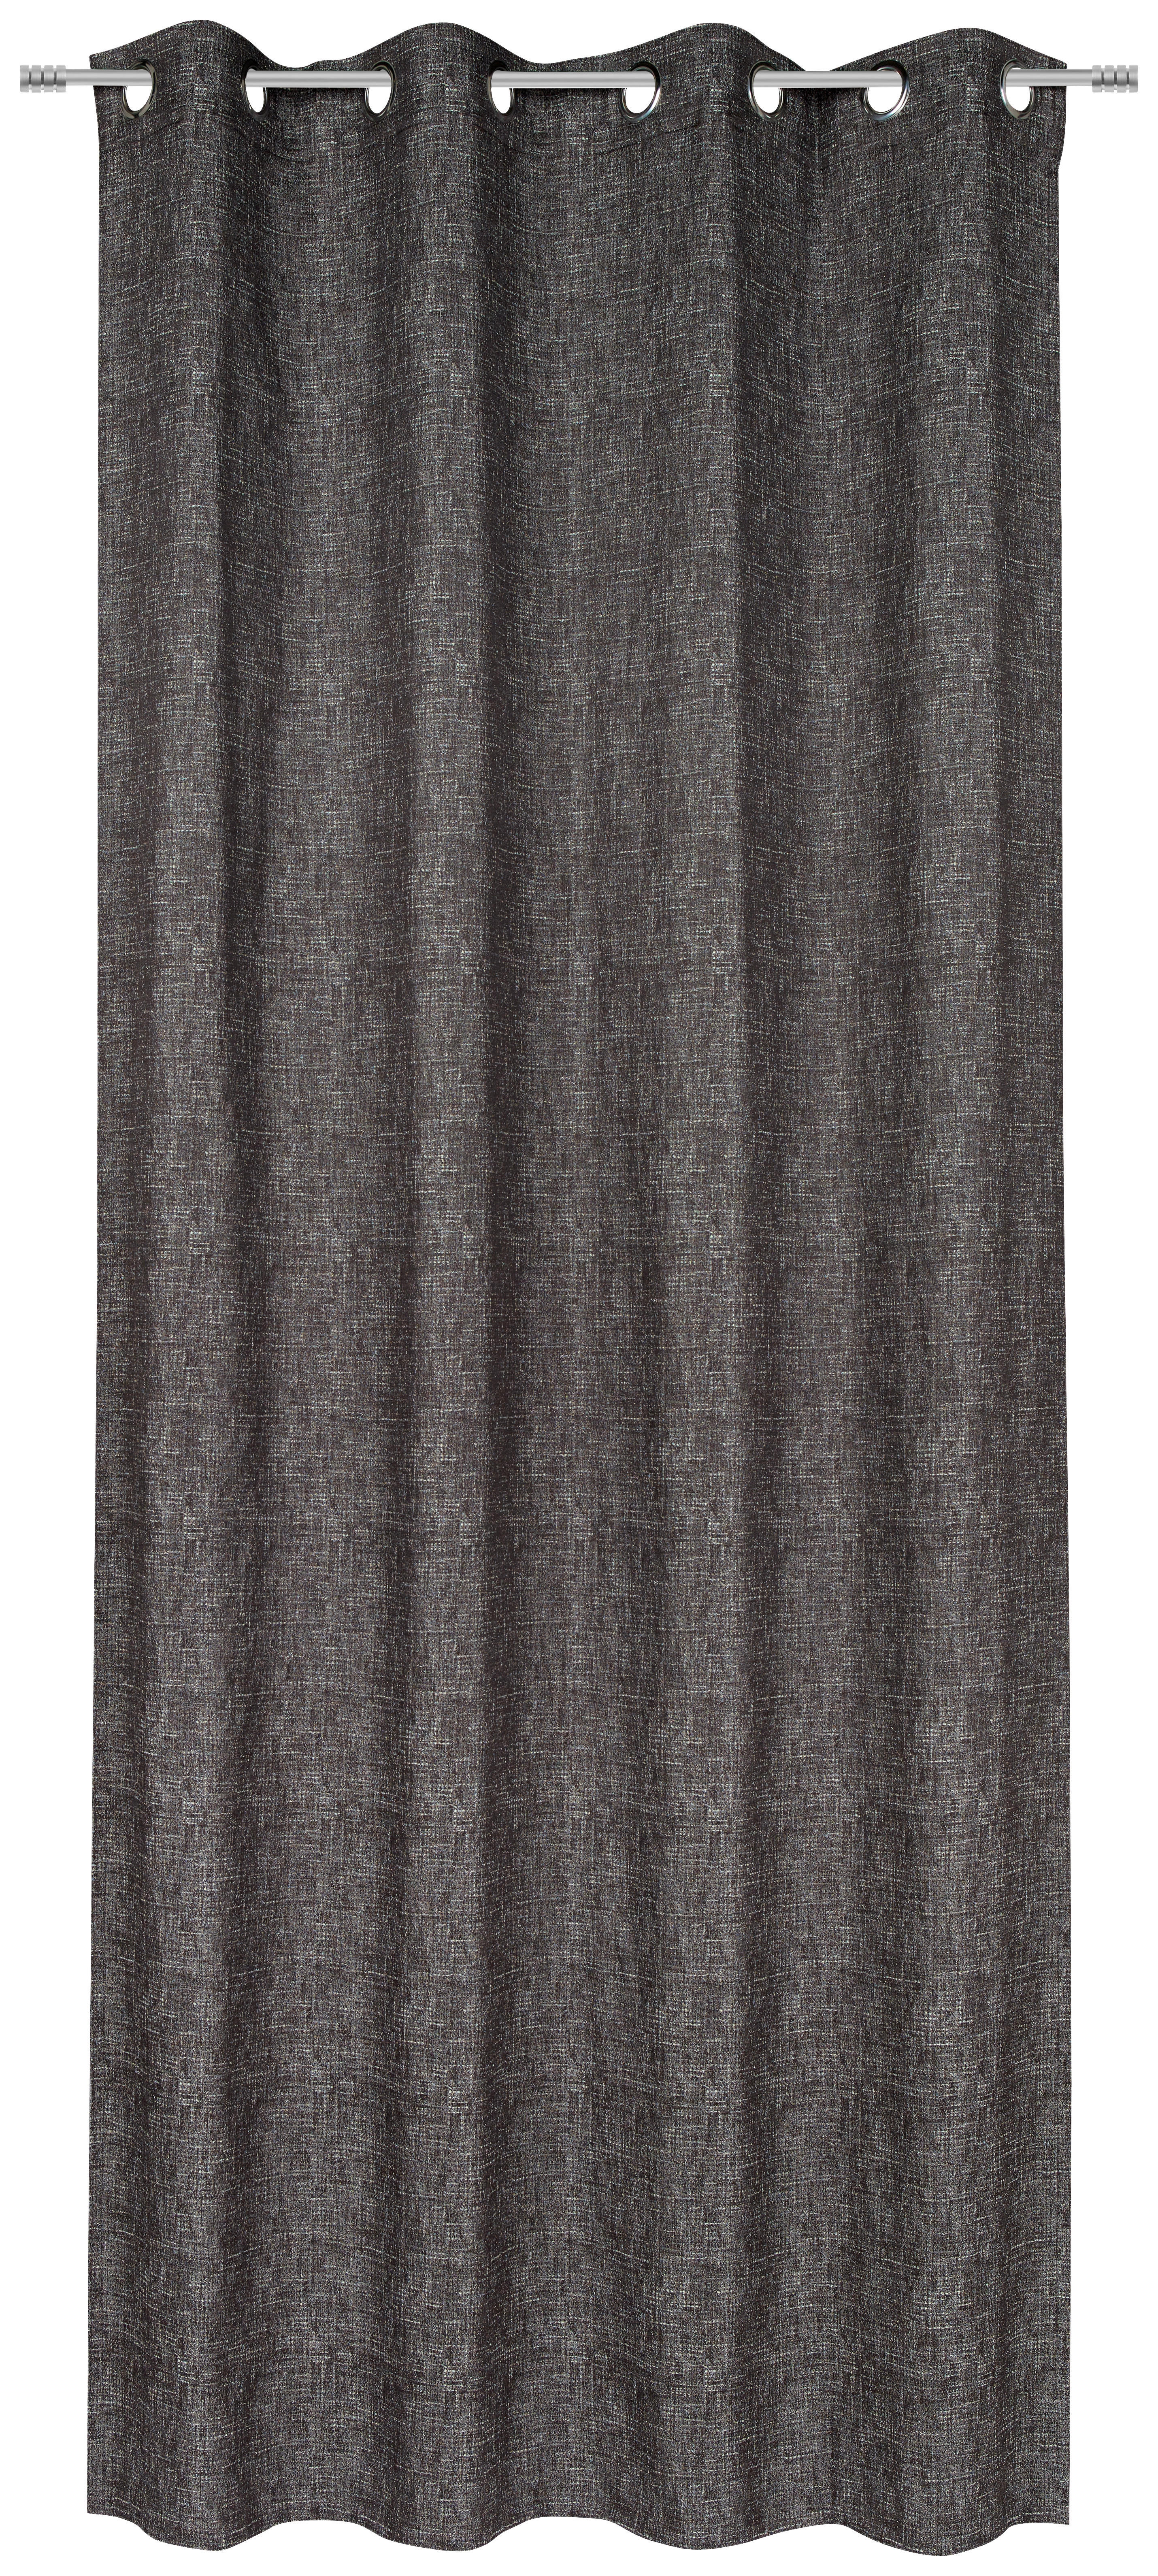 ÖSENSCHAL blickdicht 135/250 cm   - Schwarz/Braun, Design, Textil (135/250cm) - Ambiente